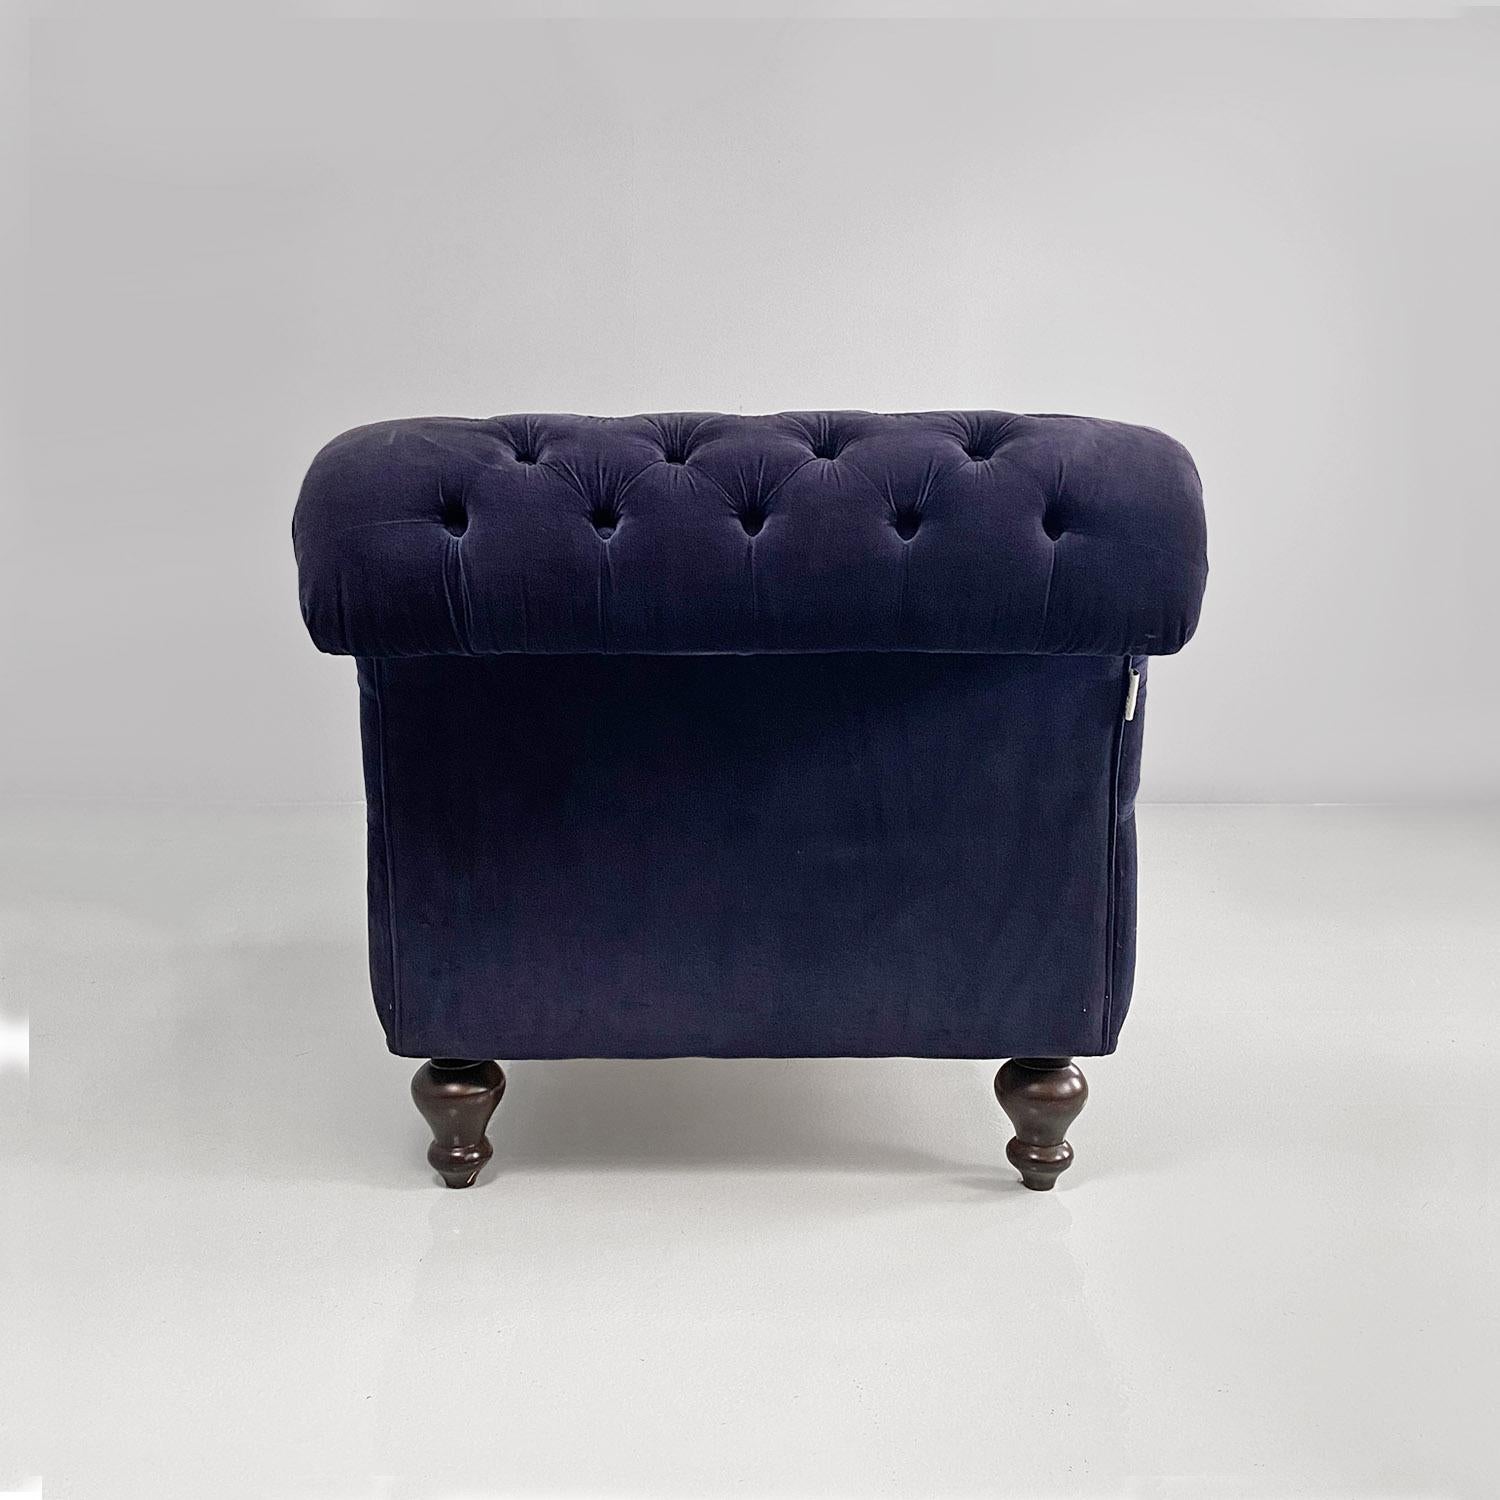 Velvet Italian antique style blue velvet and wood dormeuse or chaise longue, 1980s For Sale